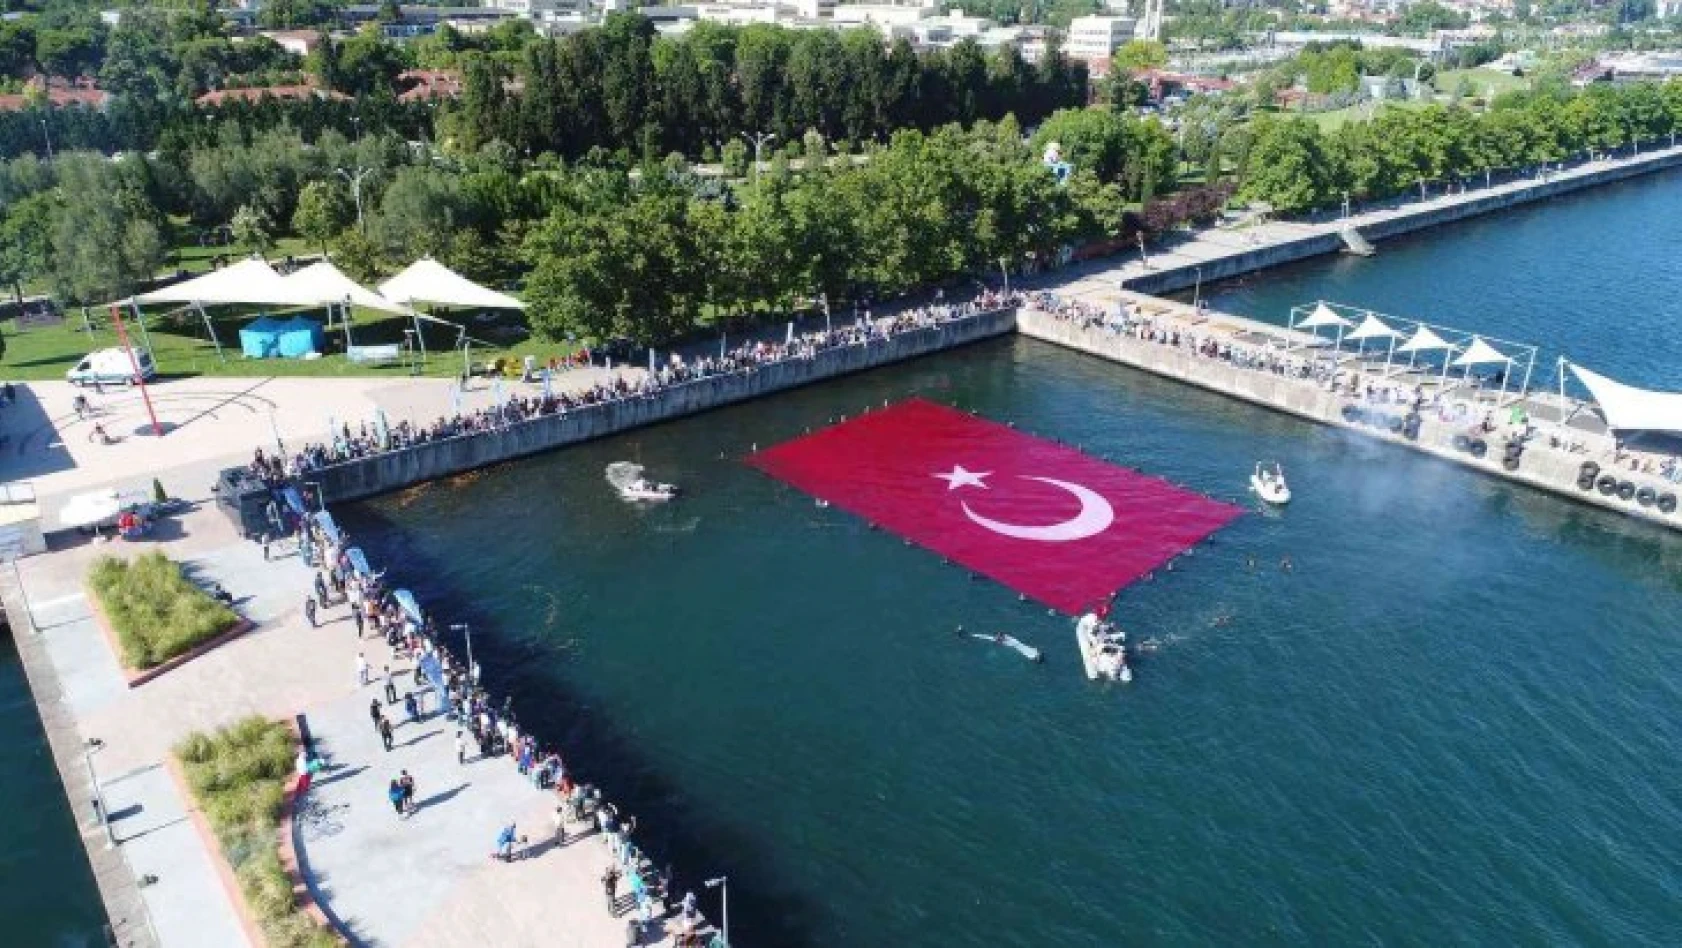 600 metrekarelik rekor büyüklükteki Türk bayrağı, İzmit Körfezi'ni taçlandırdı